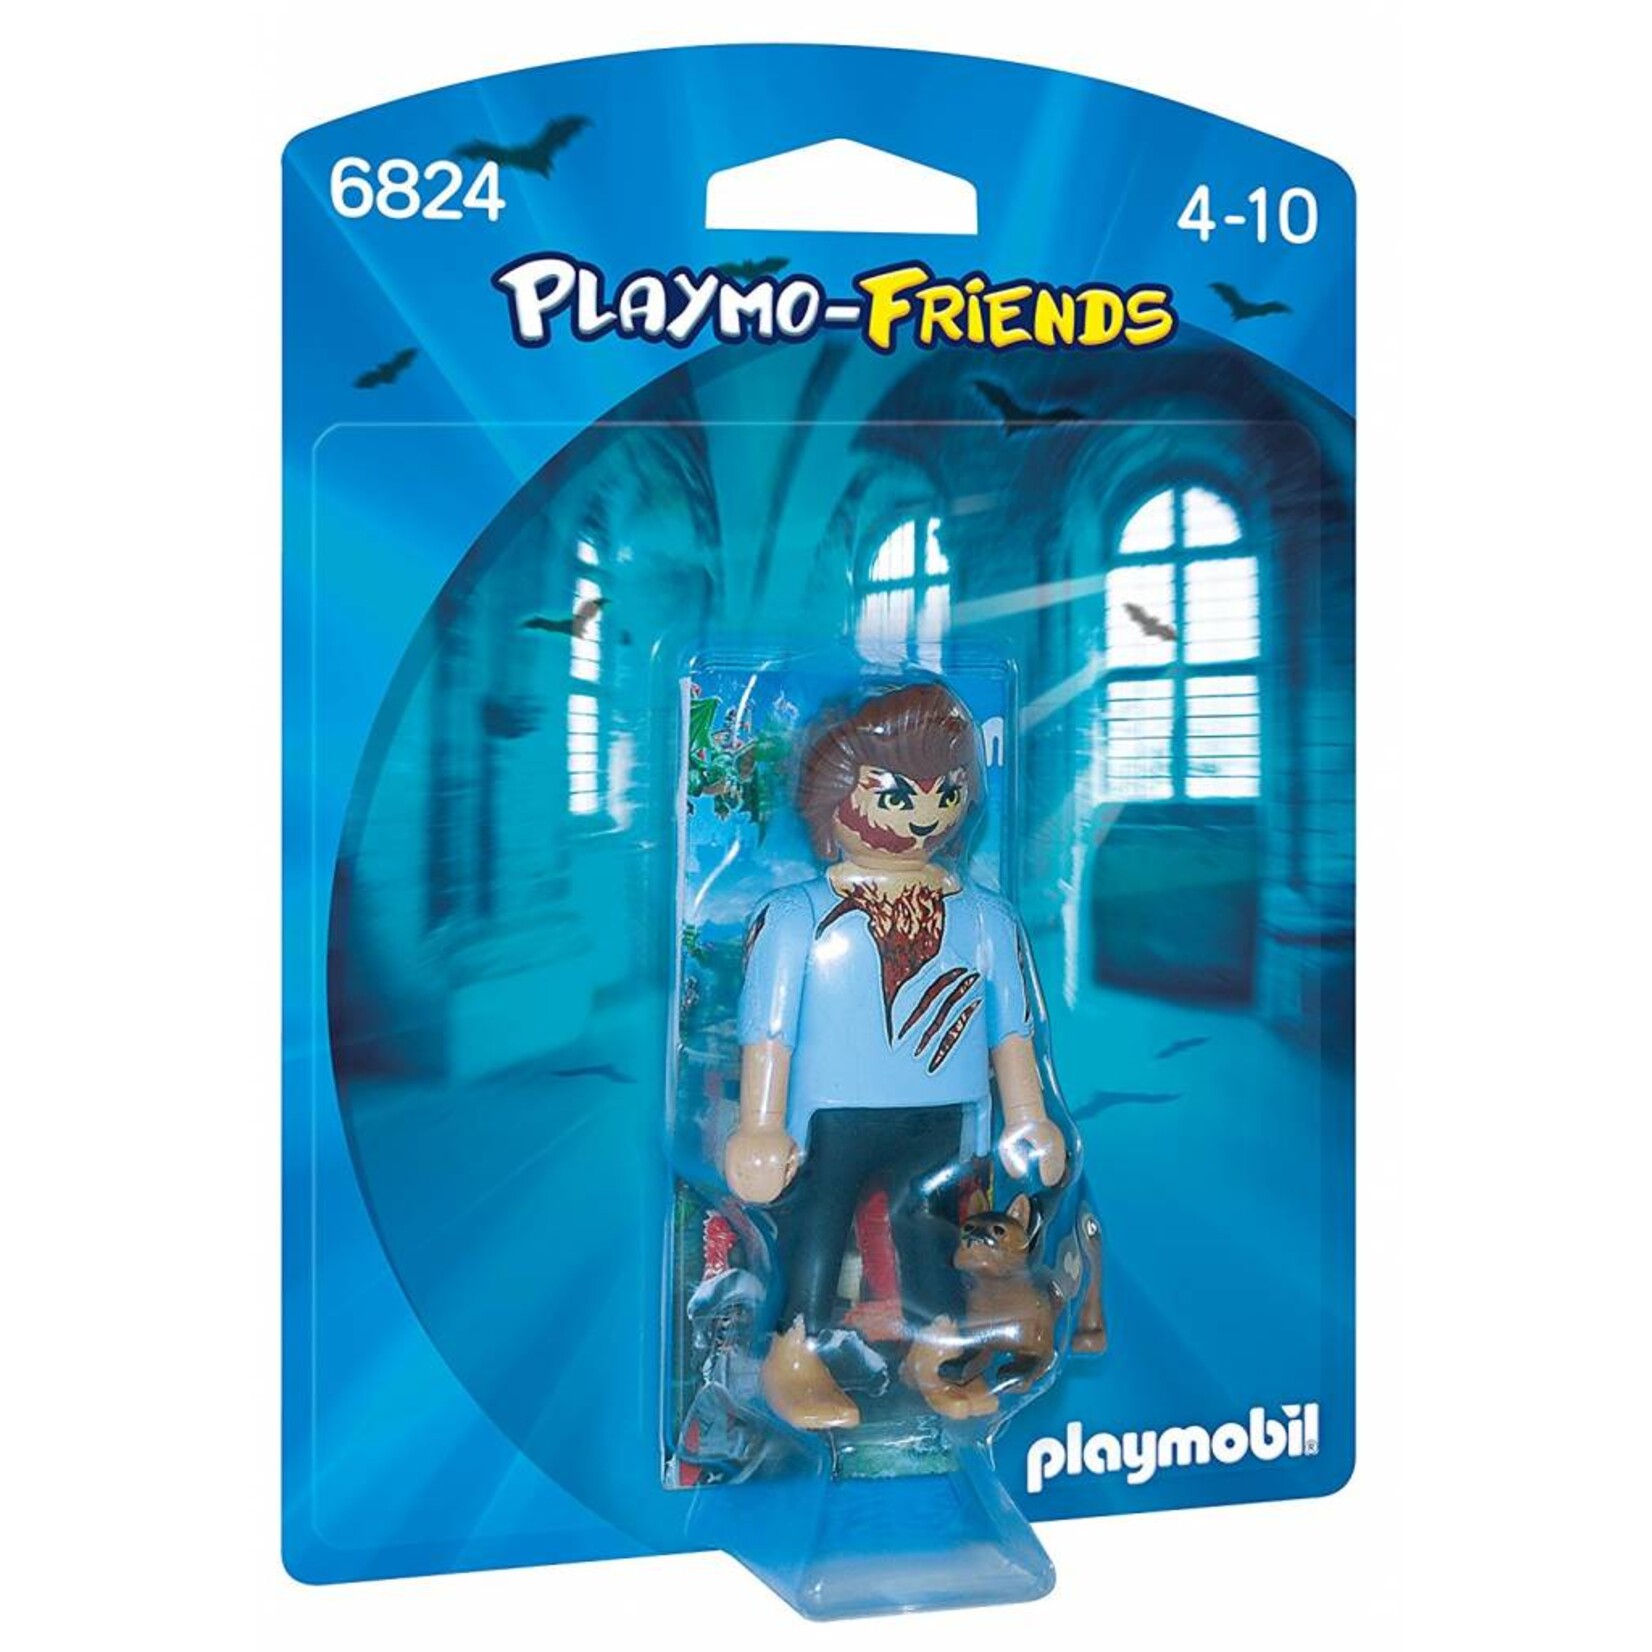 Playmobil Playmo-Friends - Werewolf